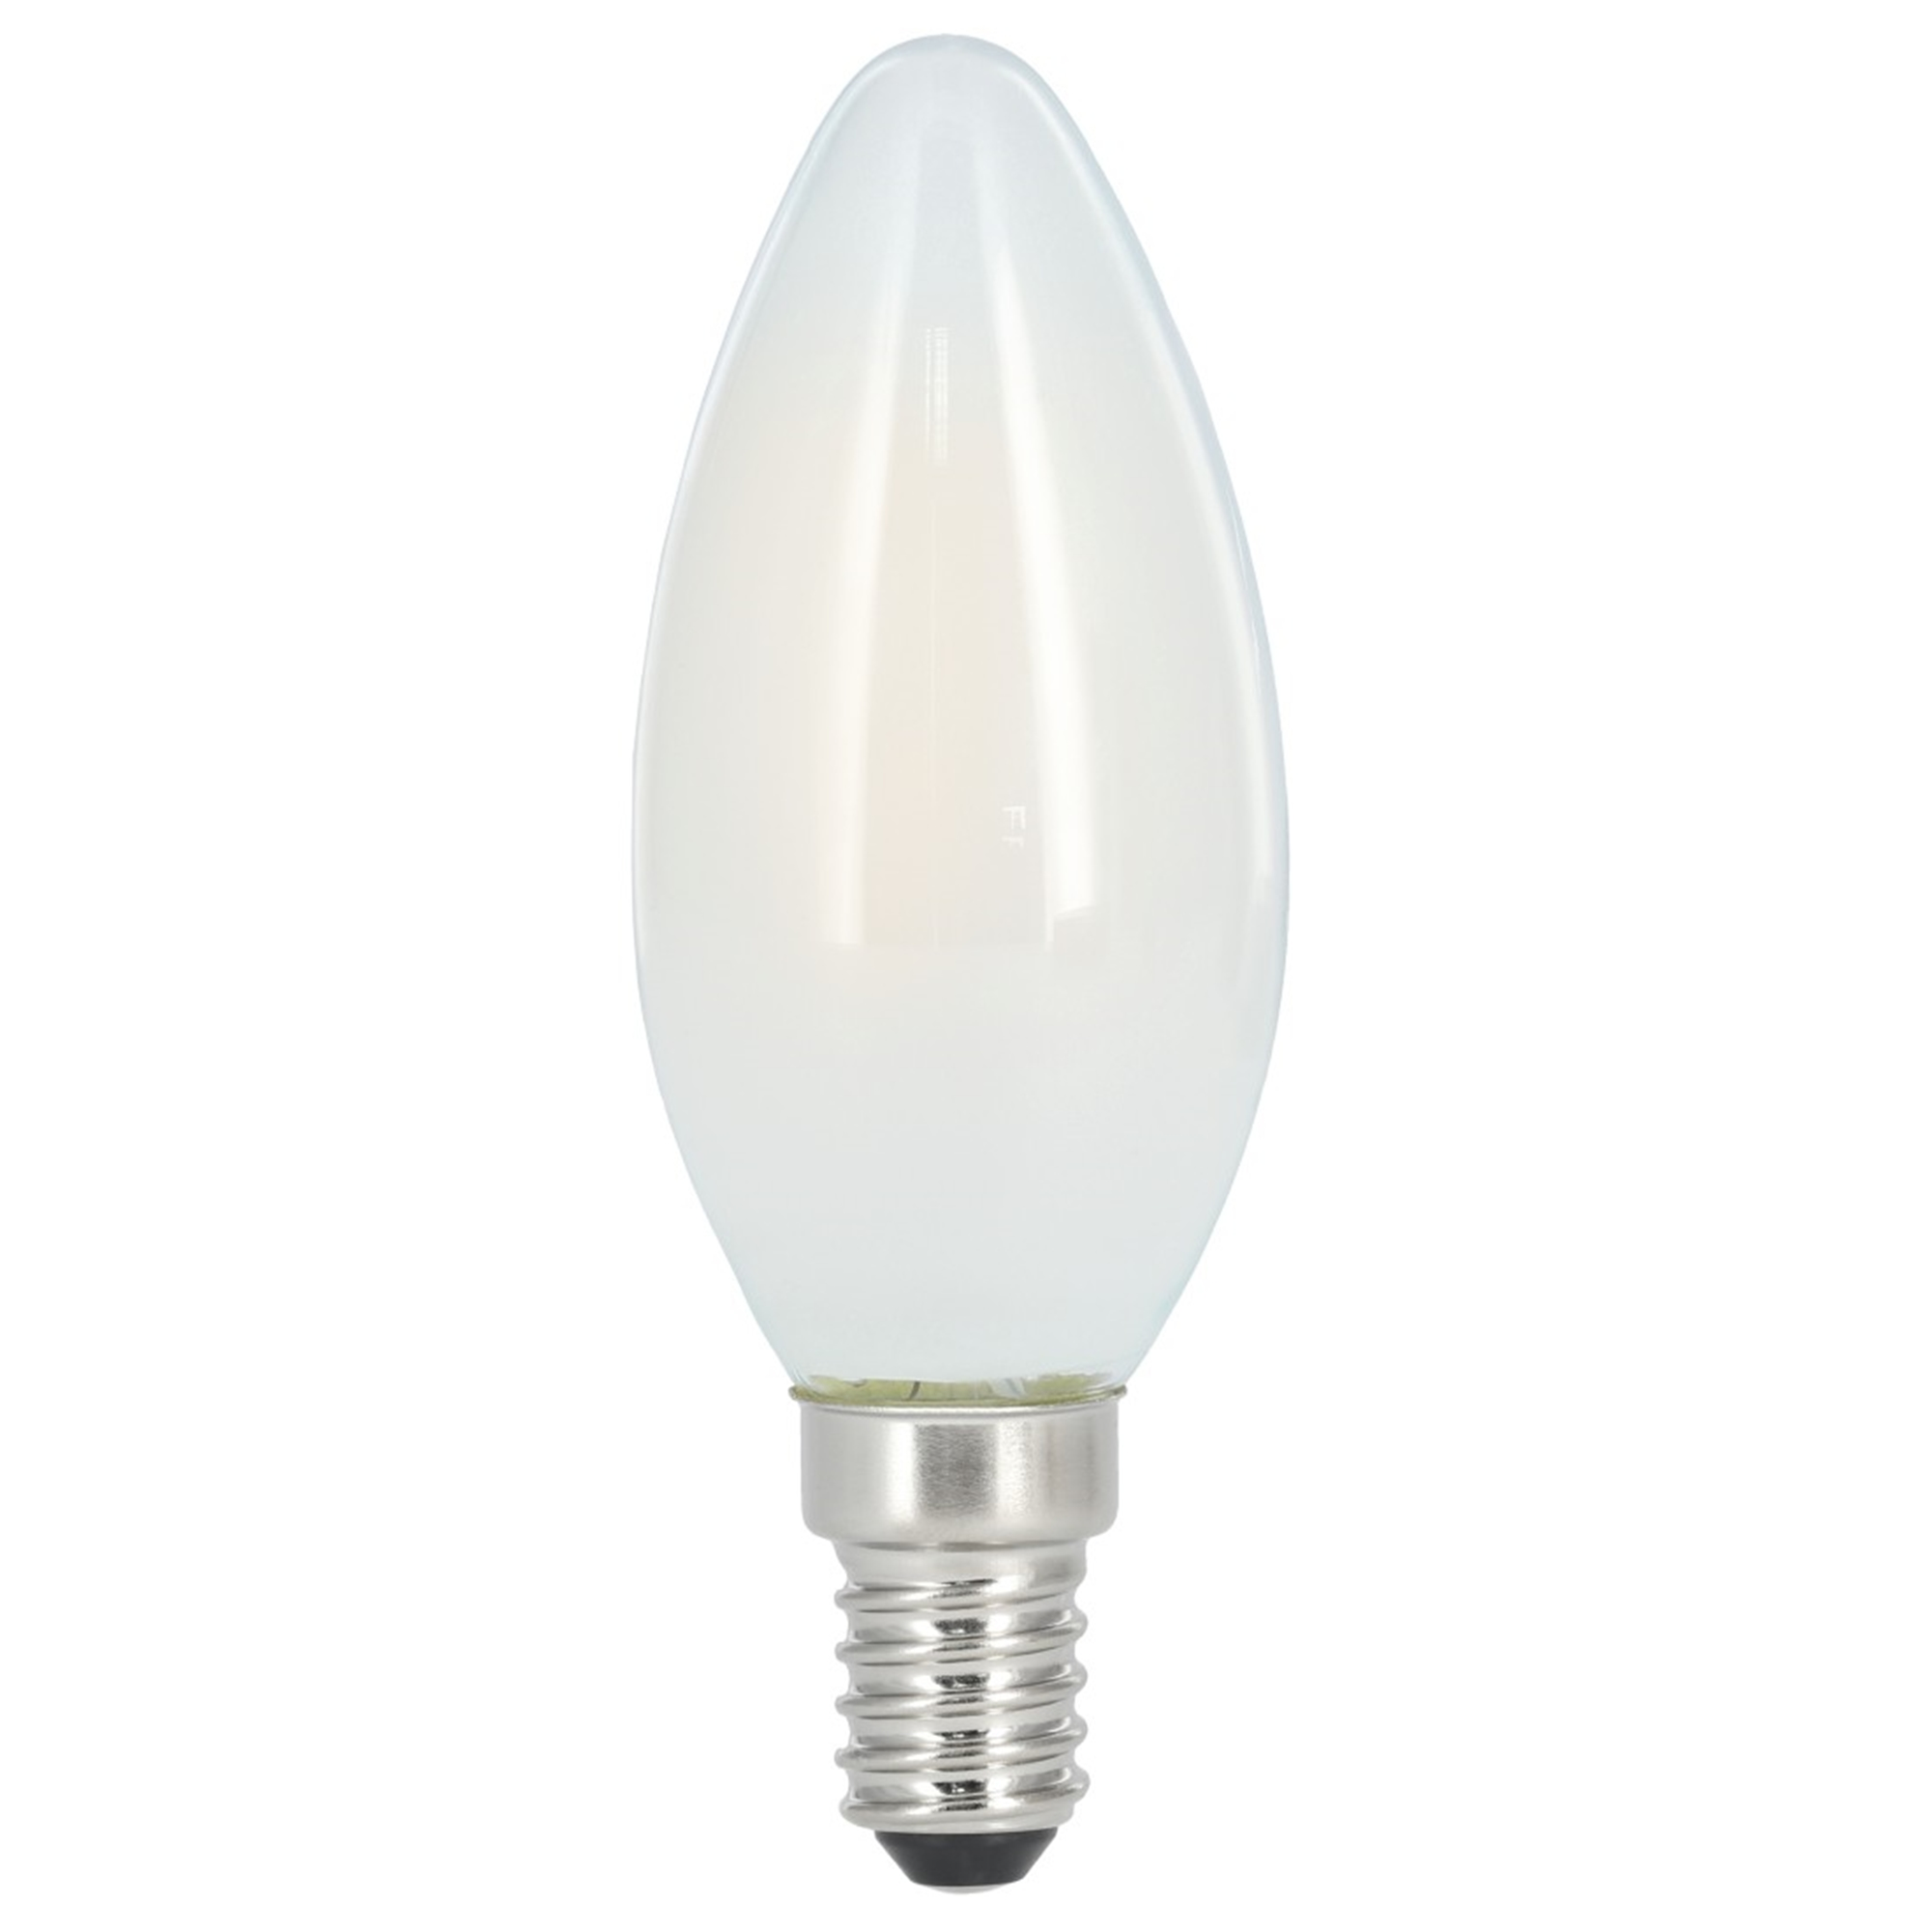 470lm E14 XAVAX Warmweiß LED-Lampe ersetzt 40W E14,